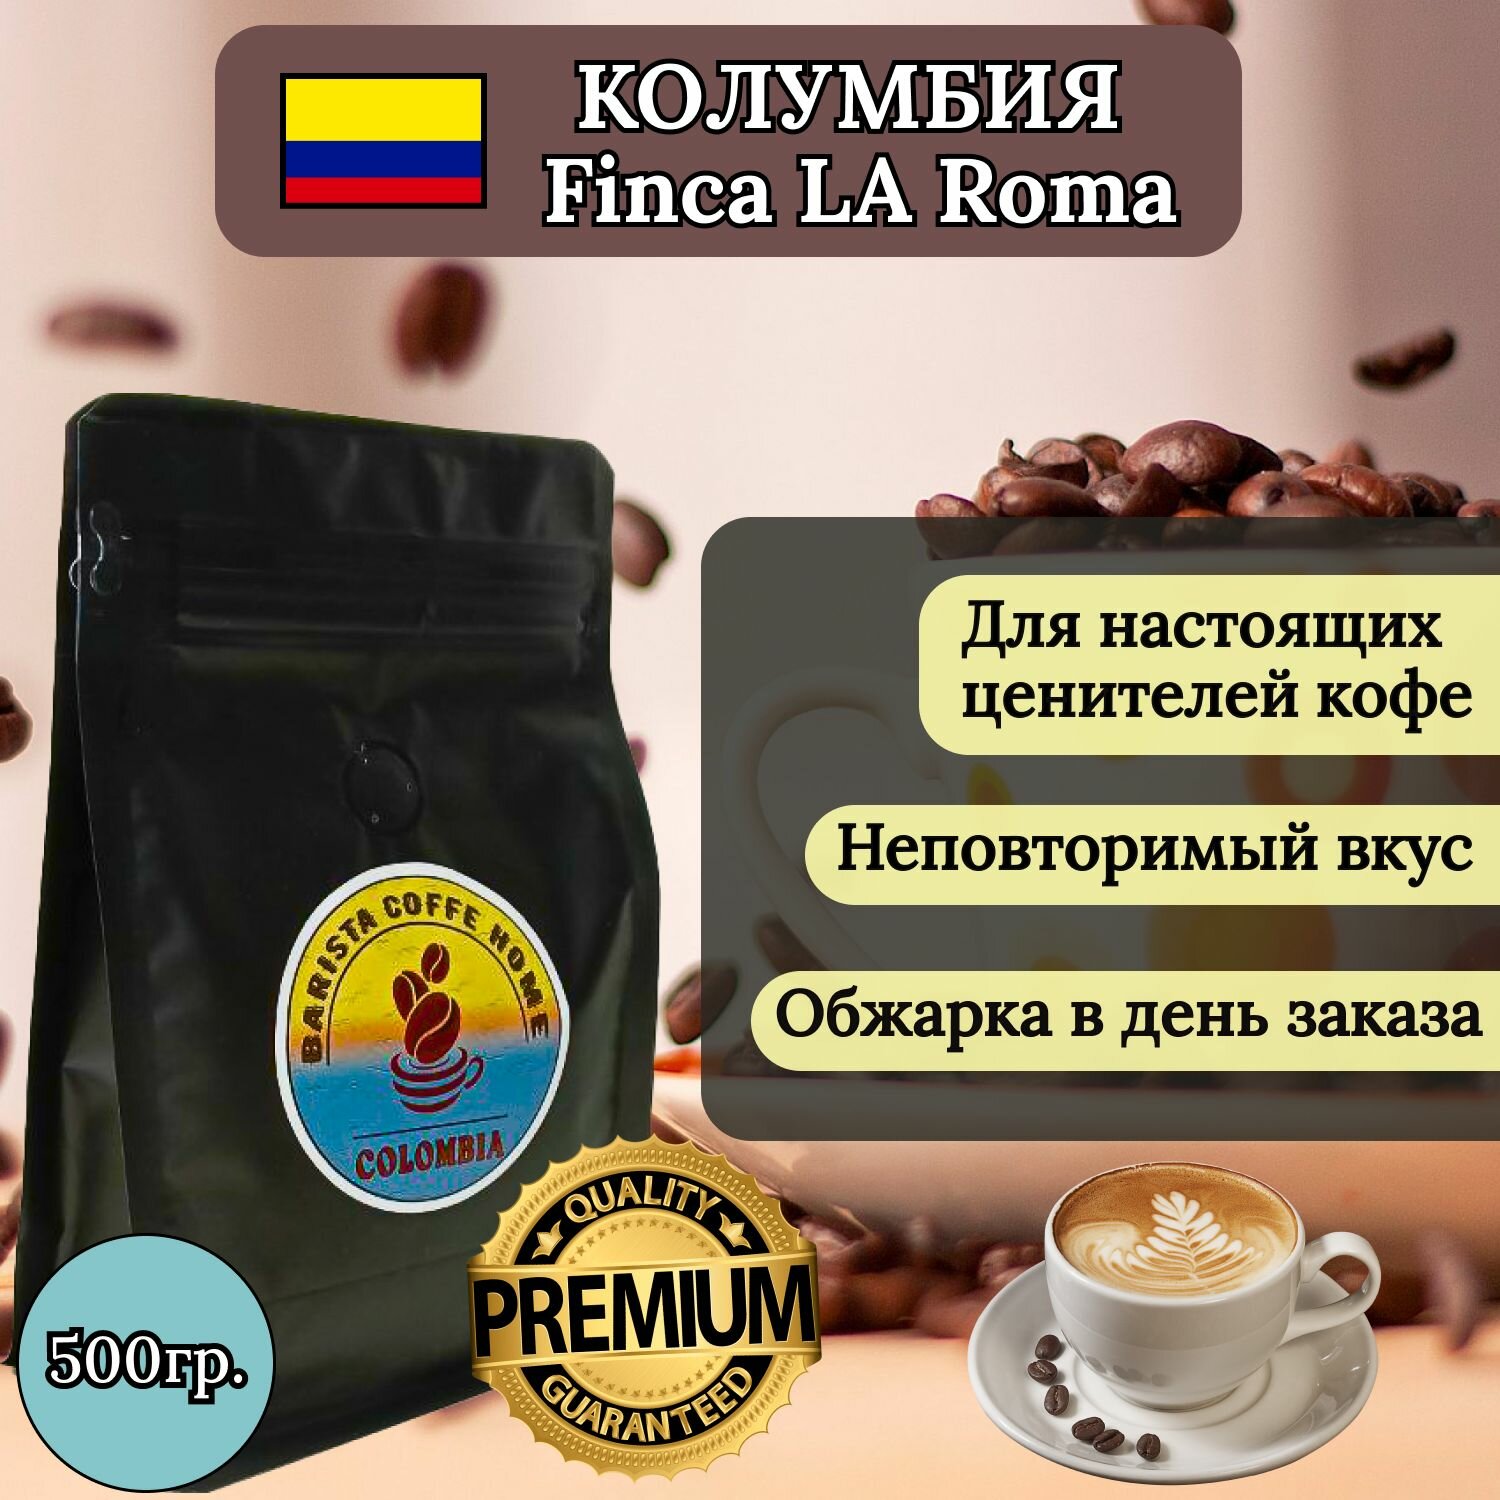 Кофе в зёрнах Колумбия Finca La Roma 100% specialty кофе (500гр). Для гурманов